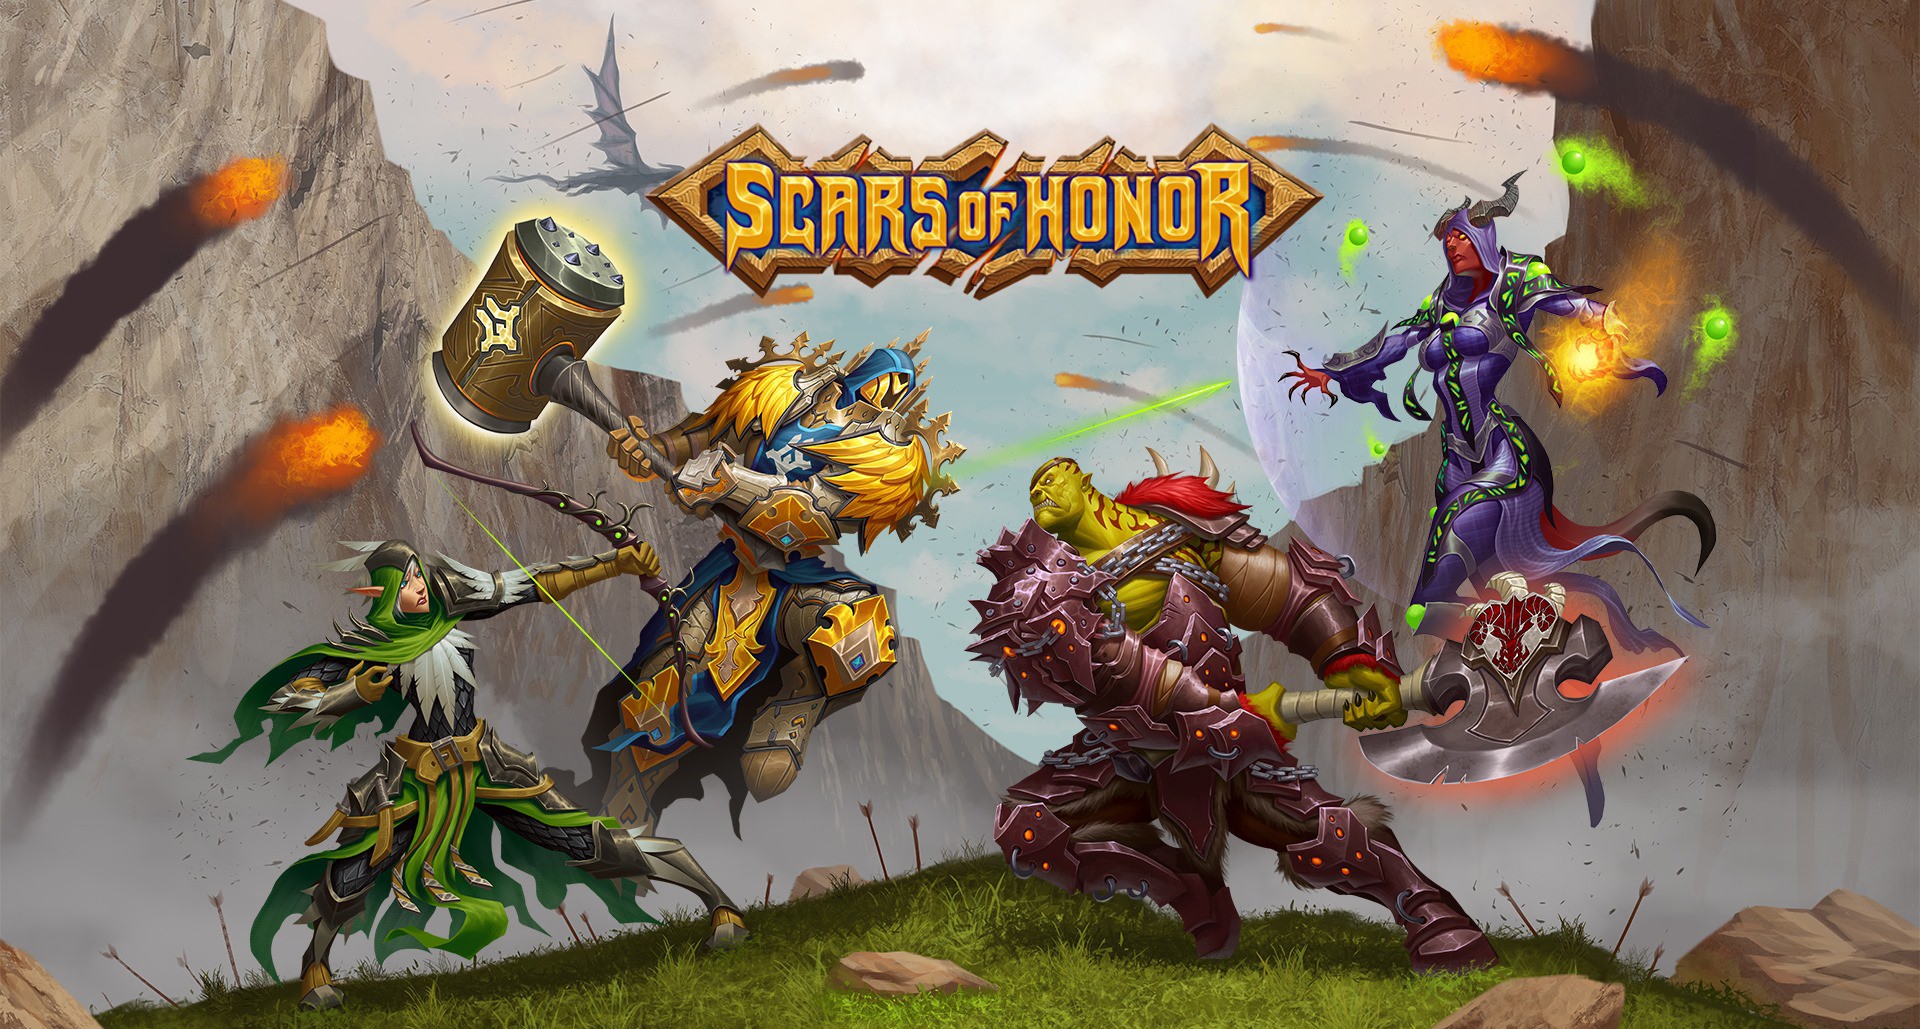 Scars of Honor – MMORPG przypominający World of Warcraft ruszył z testami